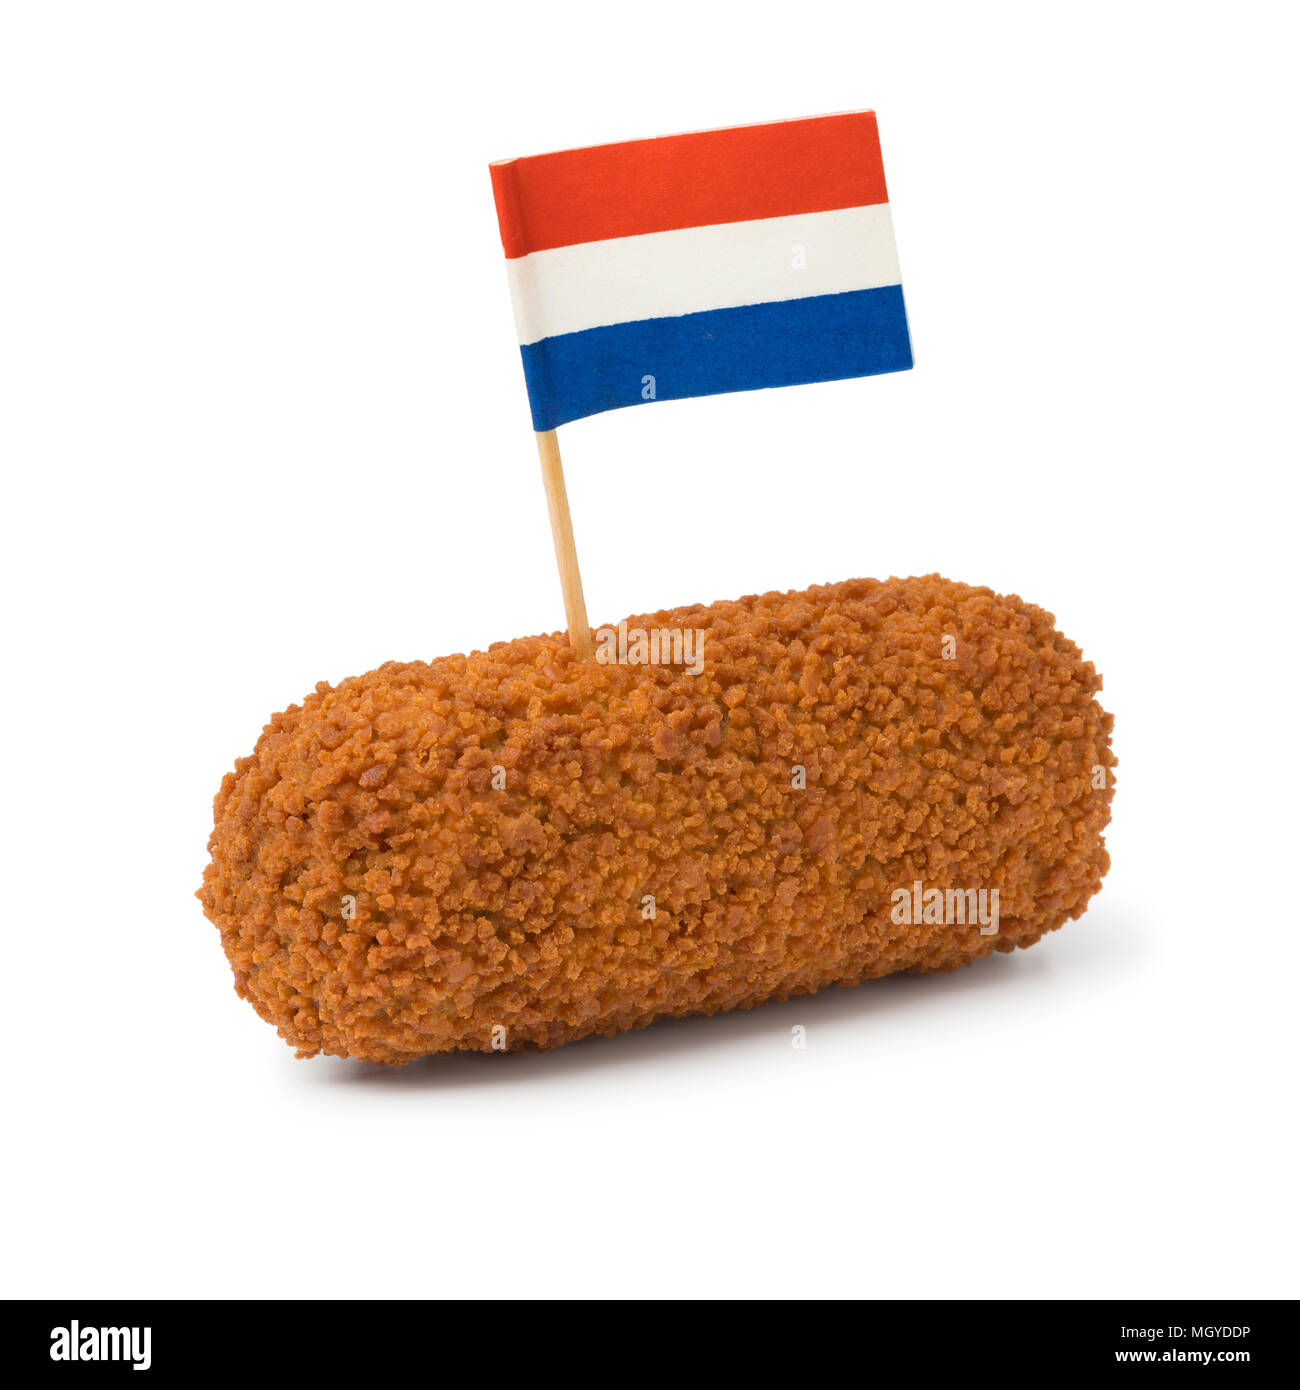 Seul le néerlandais Frits kroket avec un pavillon néerlandais isolé sur fond blanc Banque D'Images